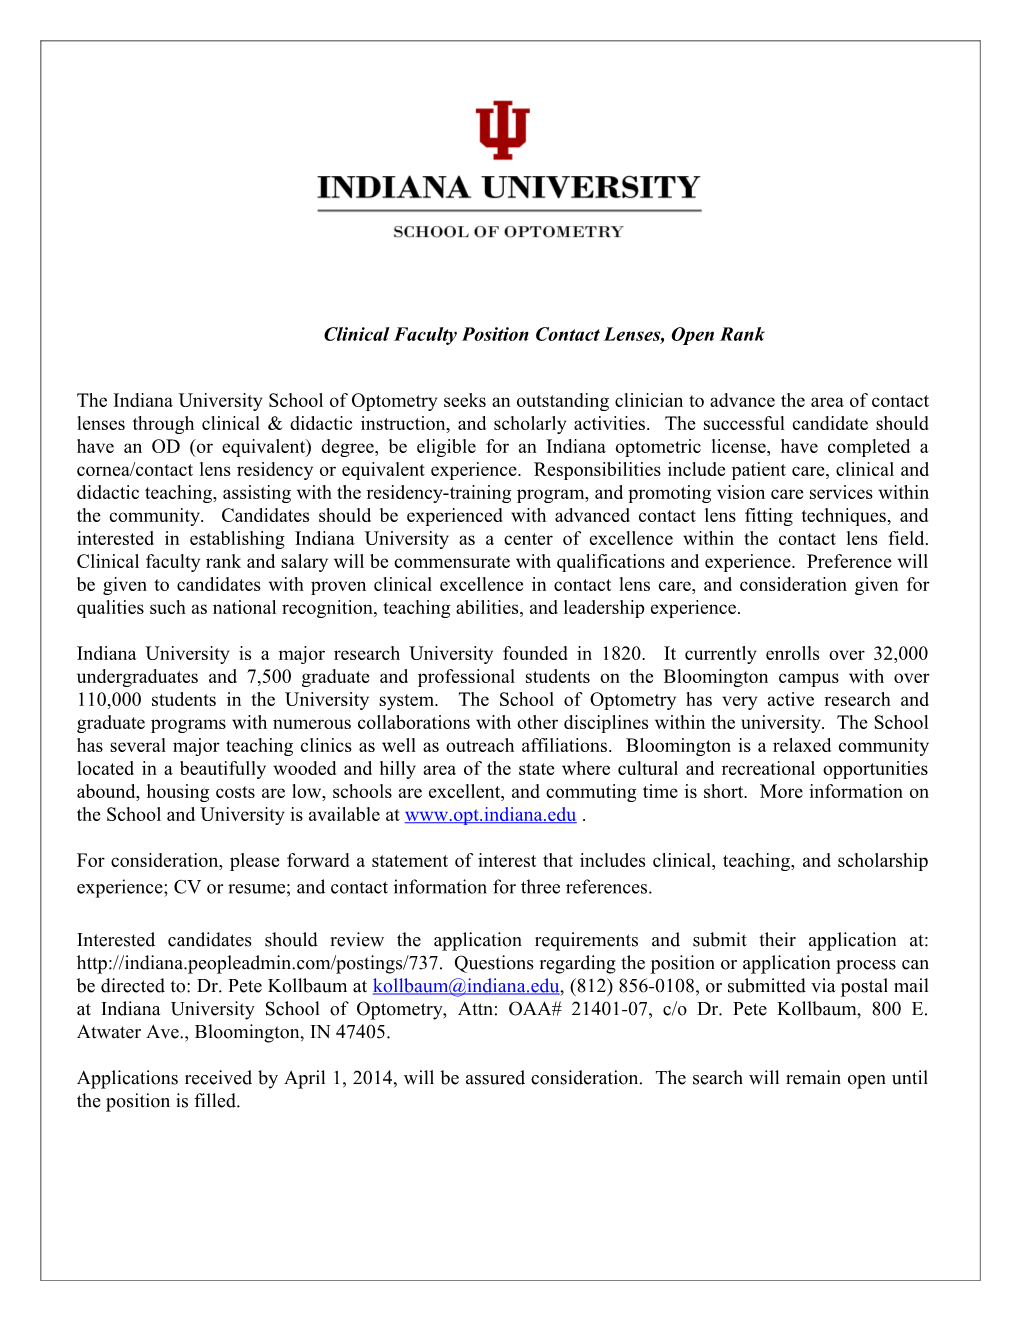 Clinical Faculty Position Contact Lenses, Open Rank